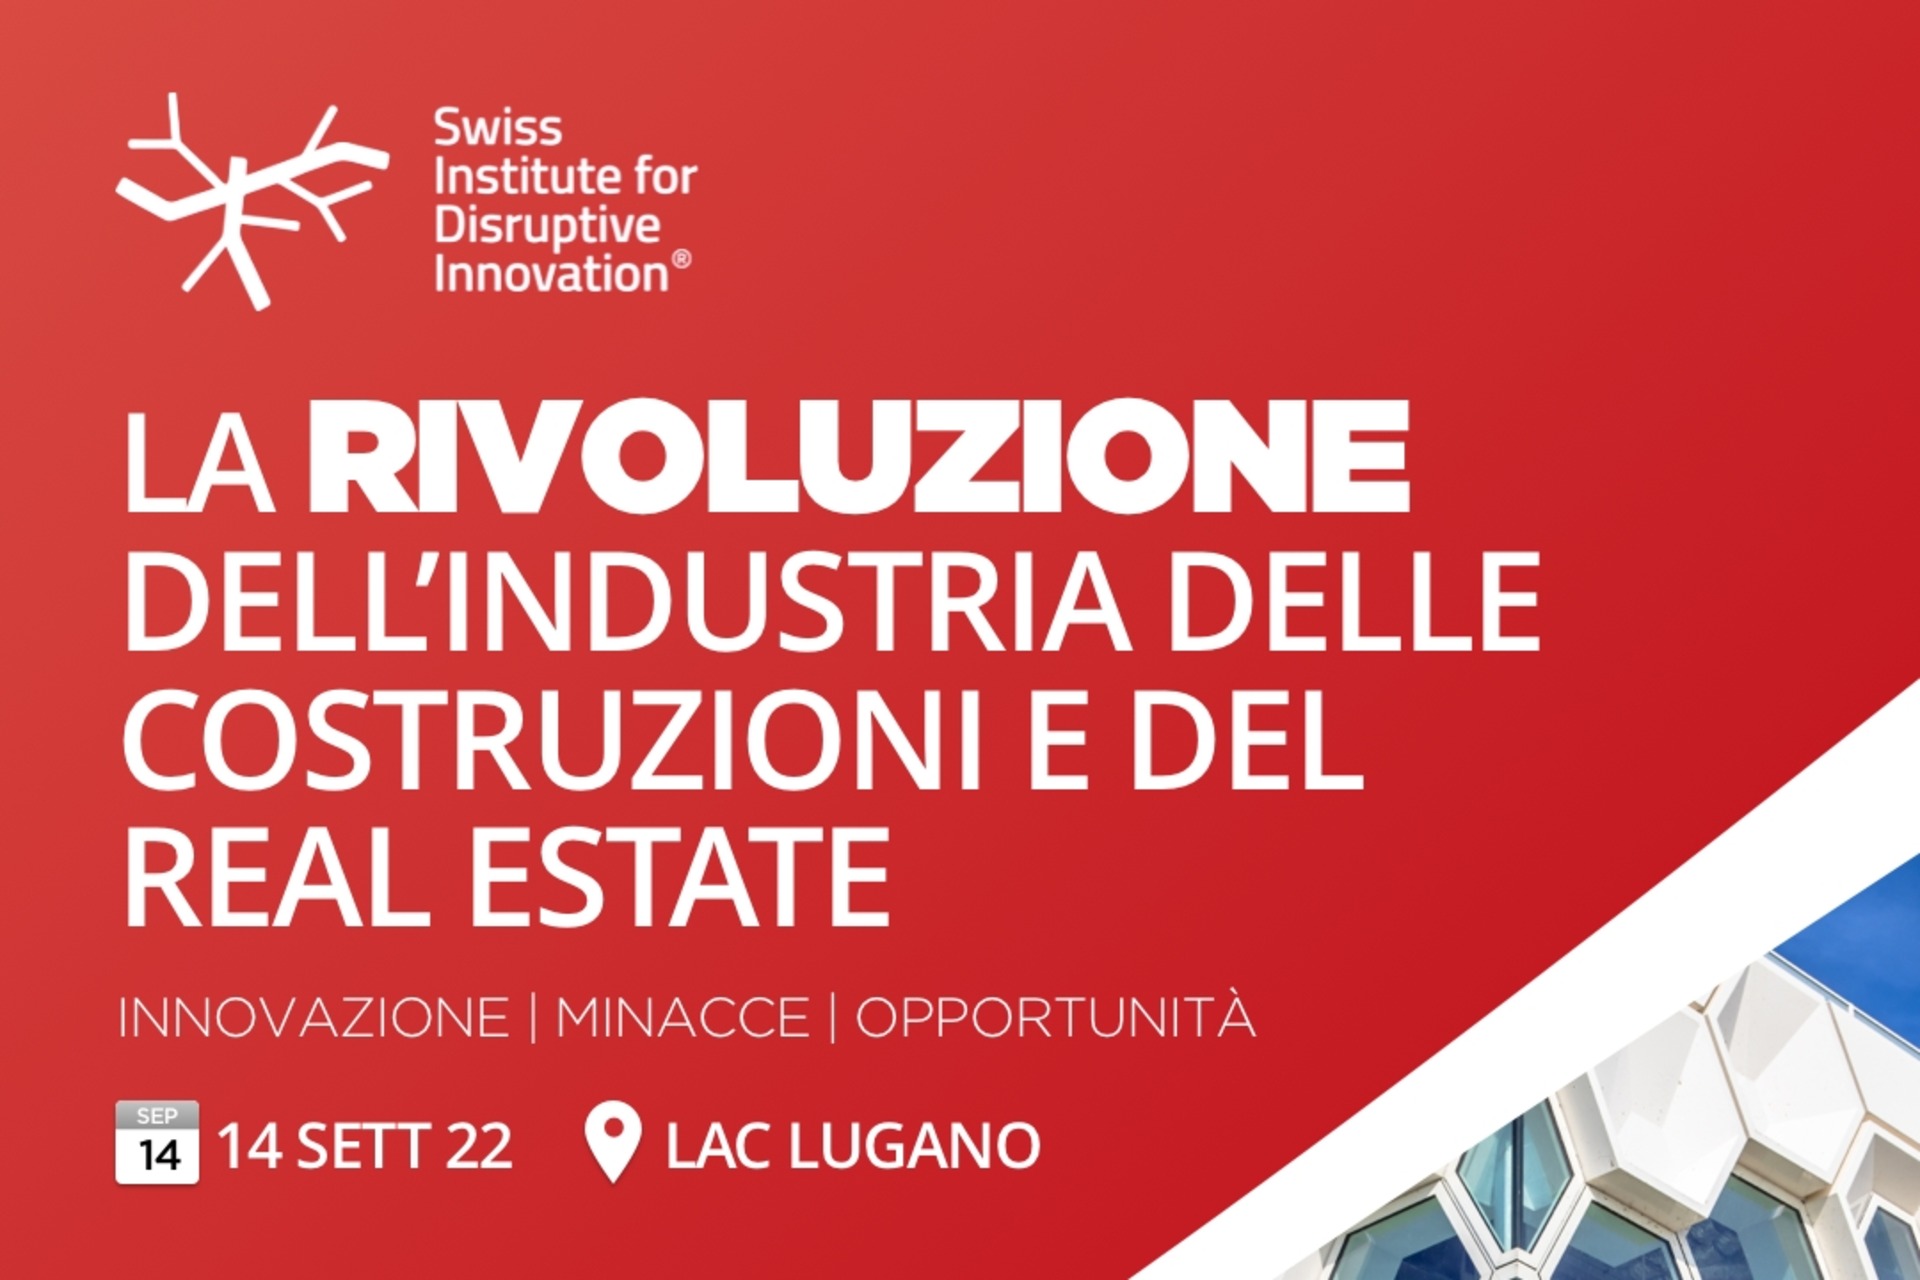 La locandina dell’evento “La rivoluzione dell’industria delle costruzioni e del real estate” del 14 settembre 2022 al LAC di Lugano (Svizzera)